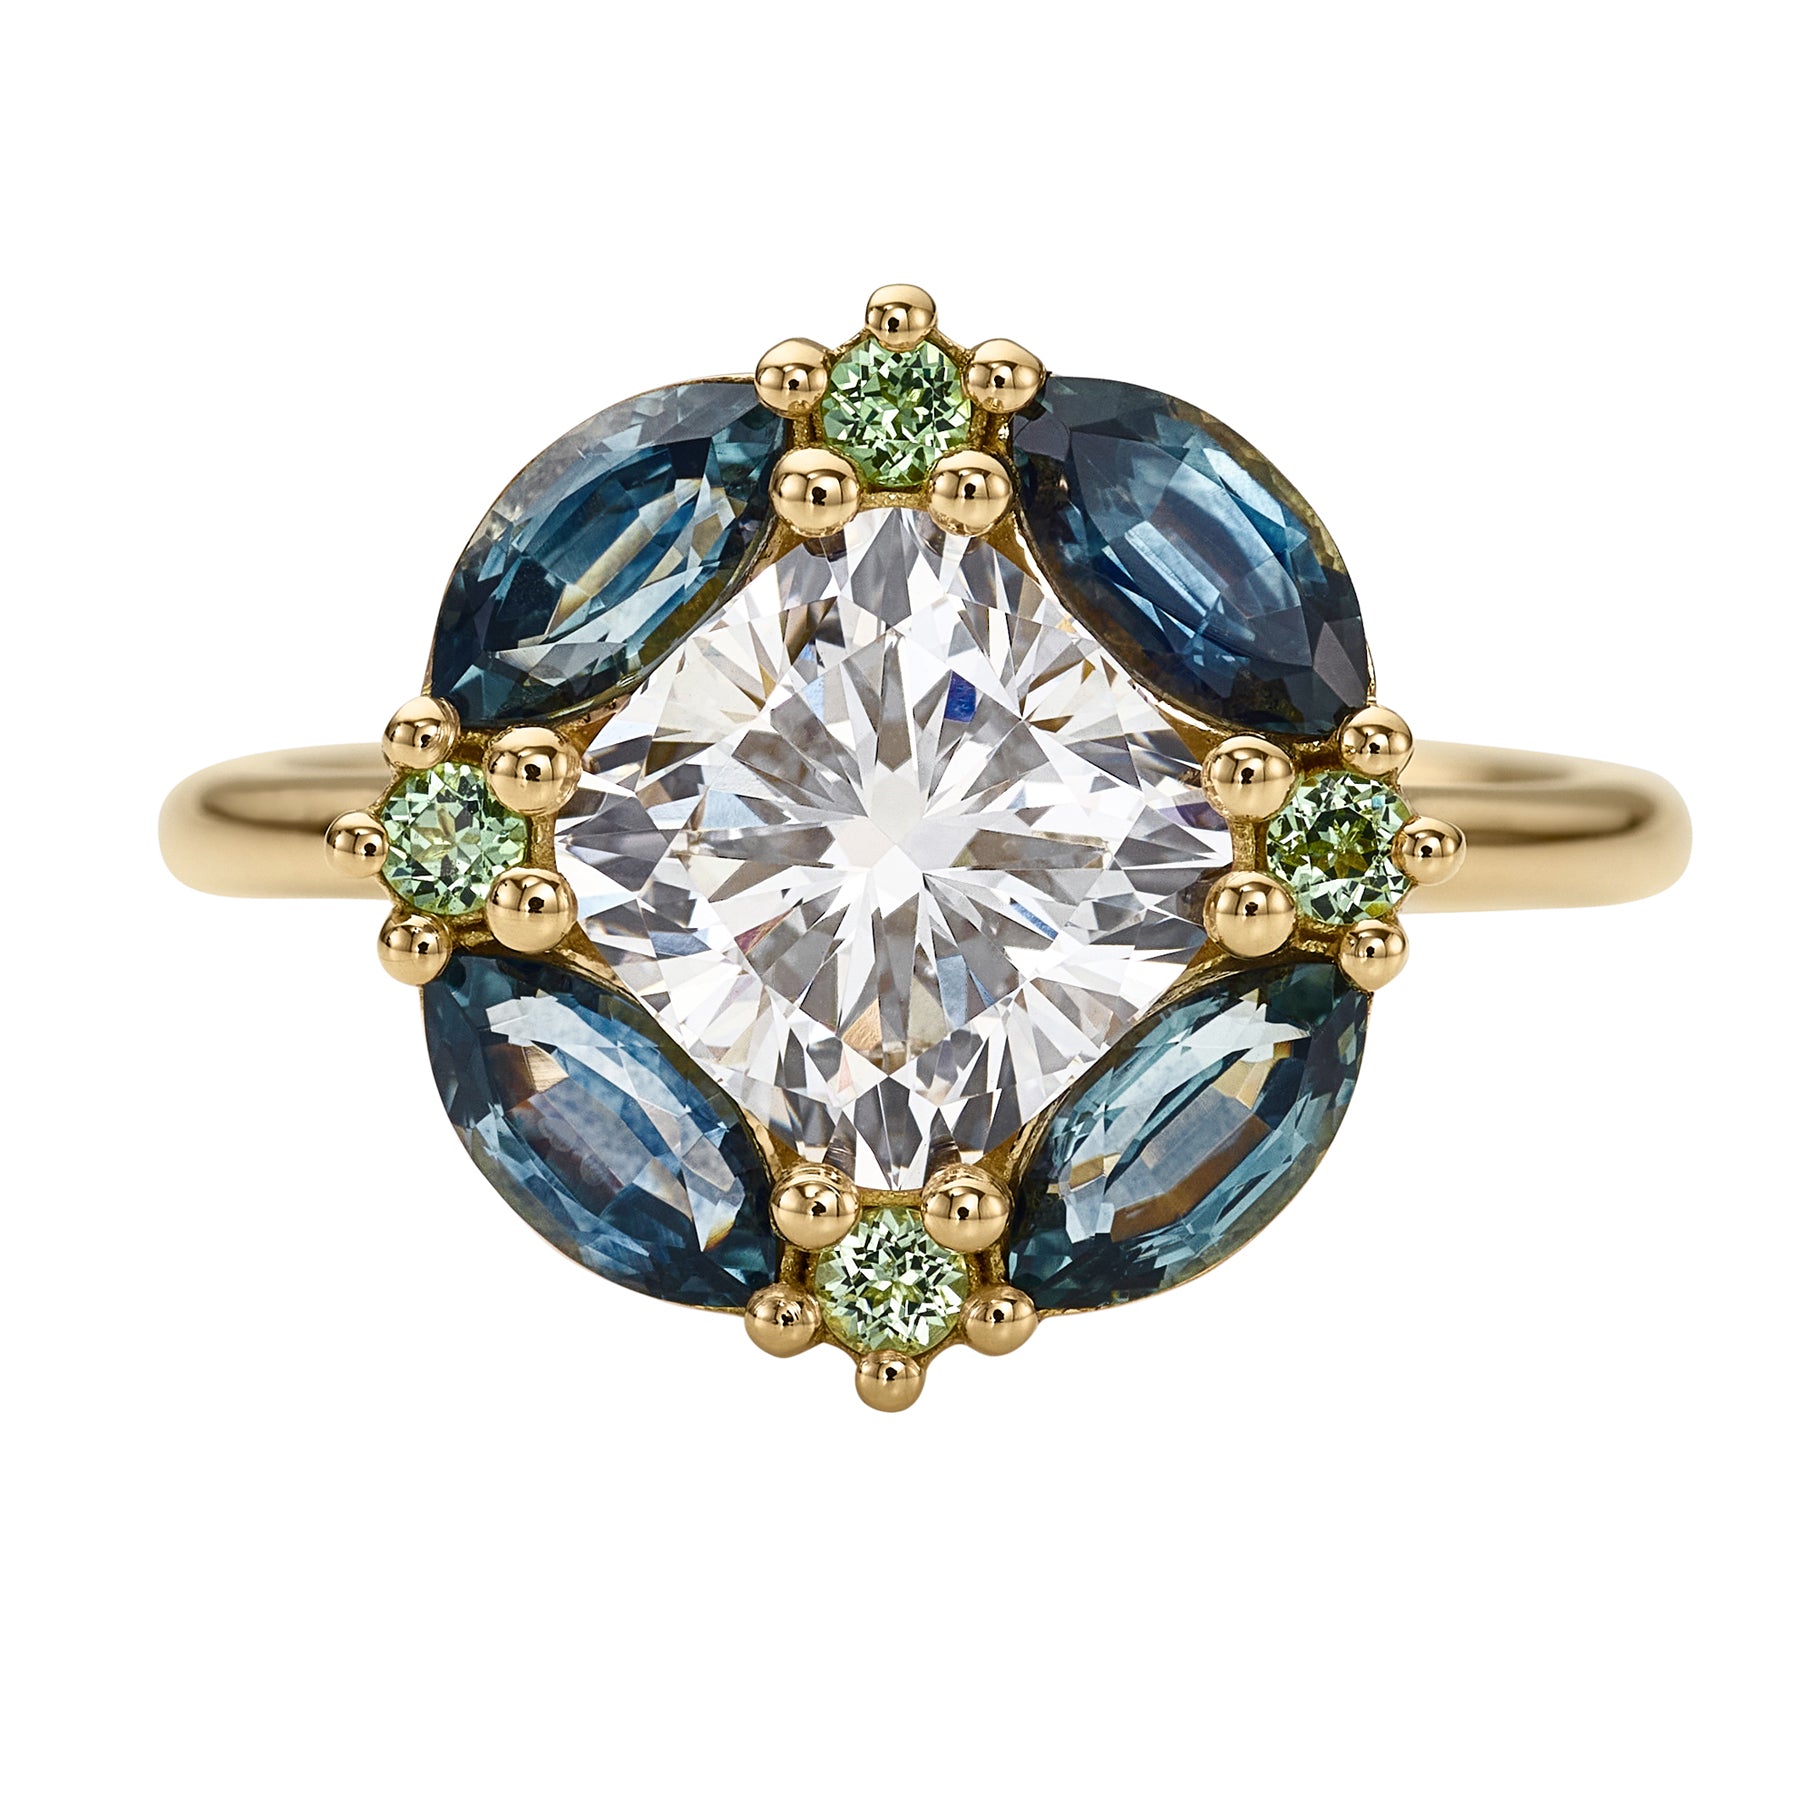 Mosaic-Lab-Grown-Cushion-Cut-Diamond-Sapphire-_-Garnet-Engagement-Ring-CLOSEUP